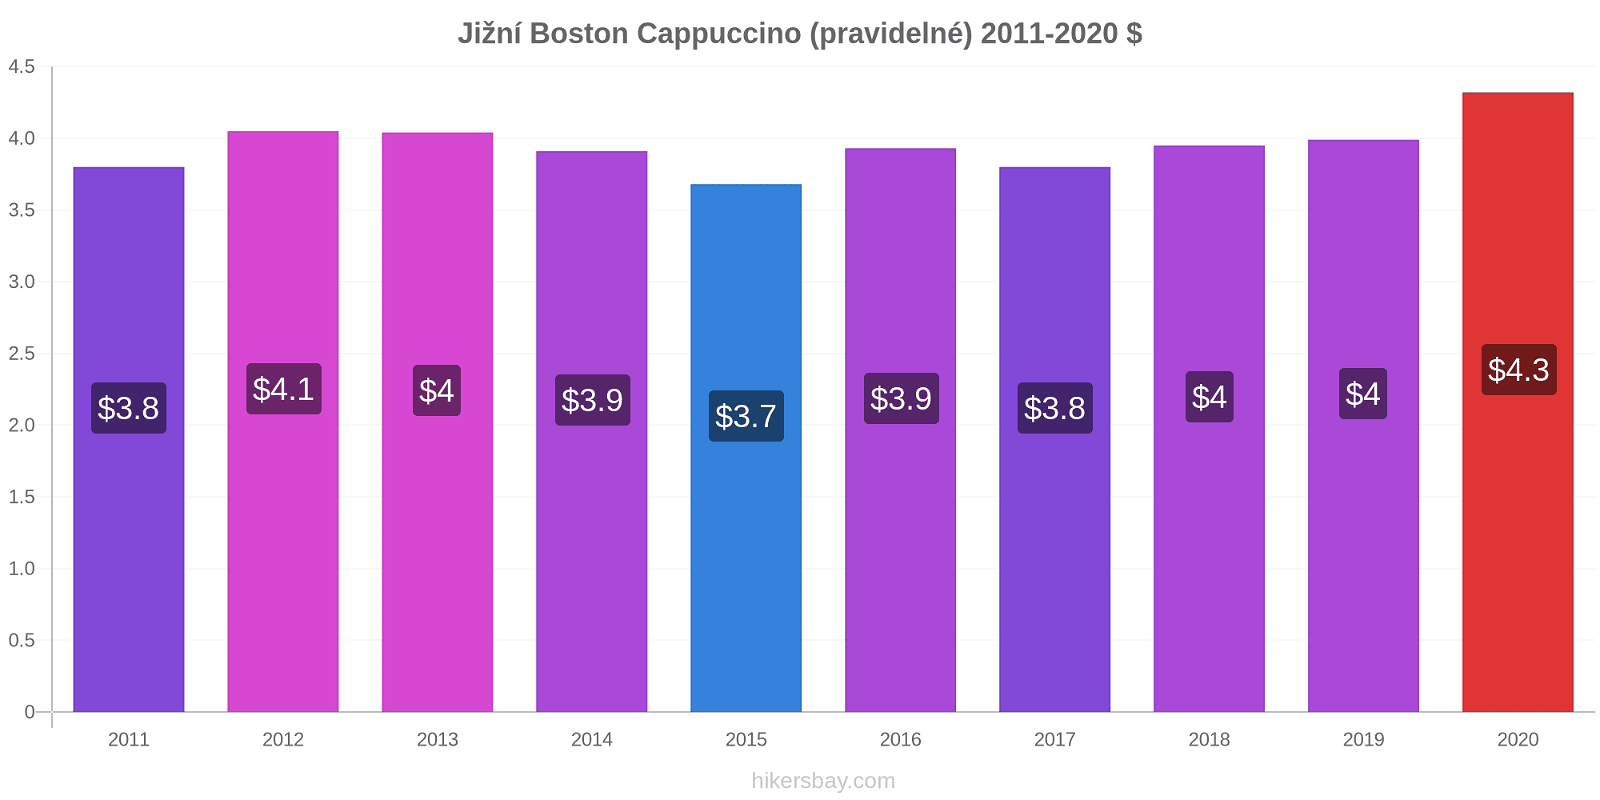 Jižní Boston změny cen Cappuccino (pravidelné) hikersbay.com